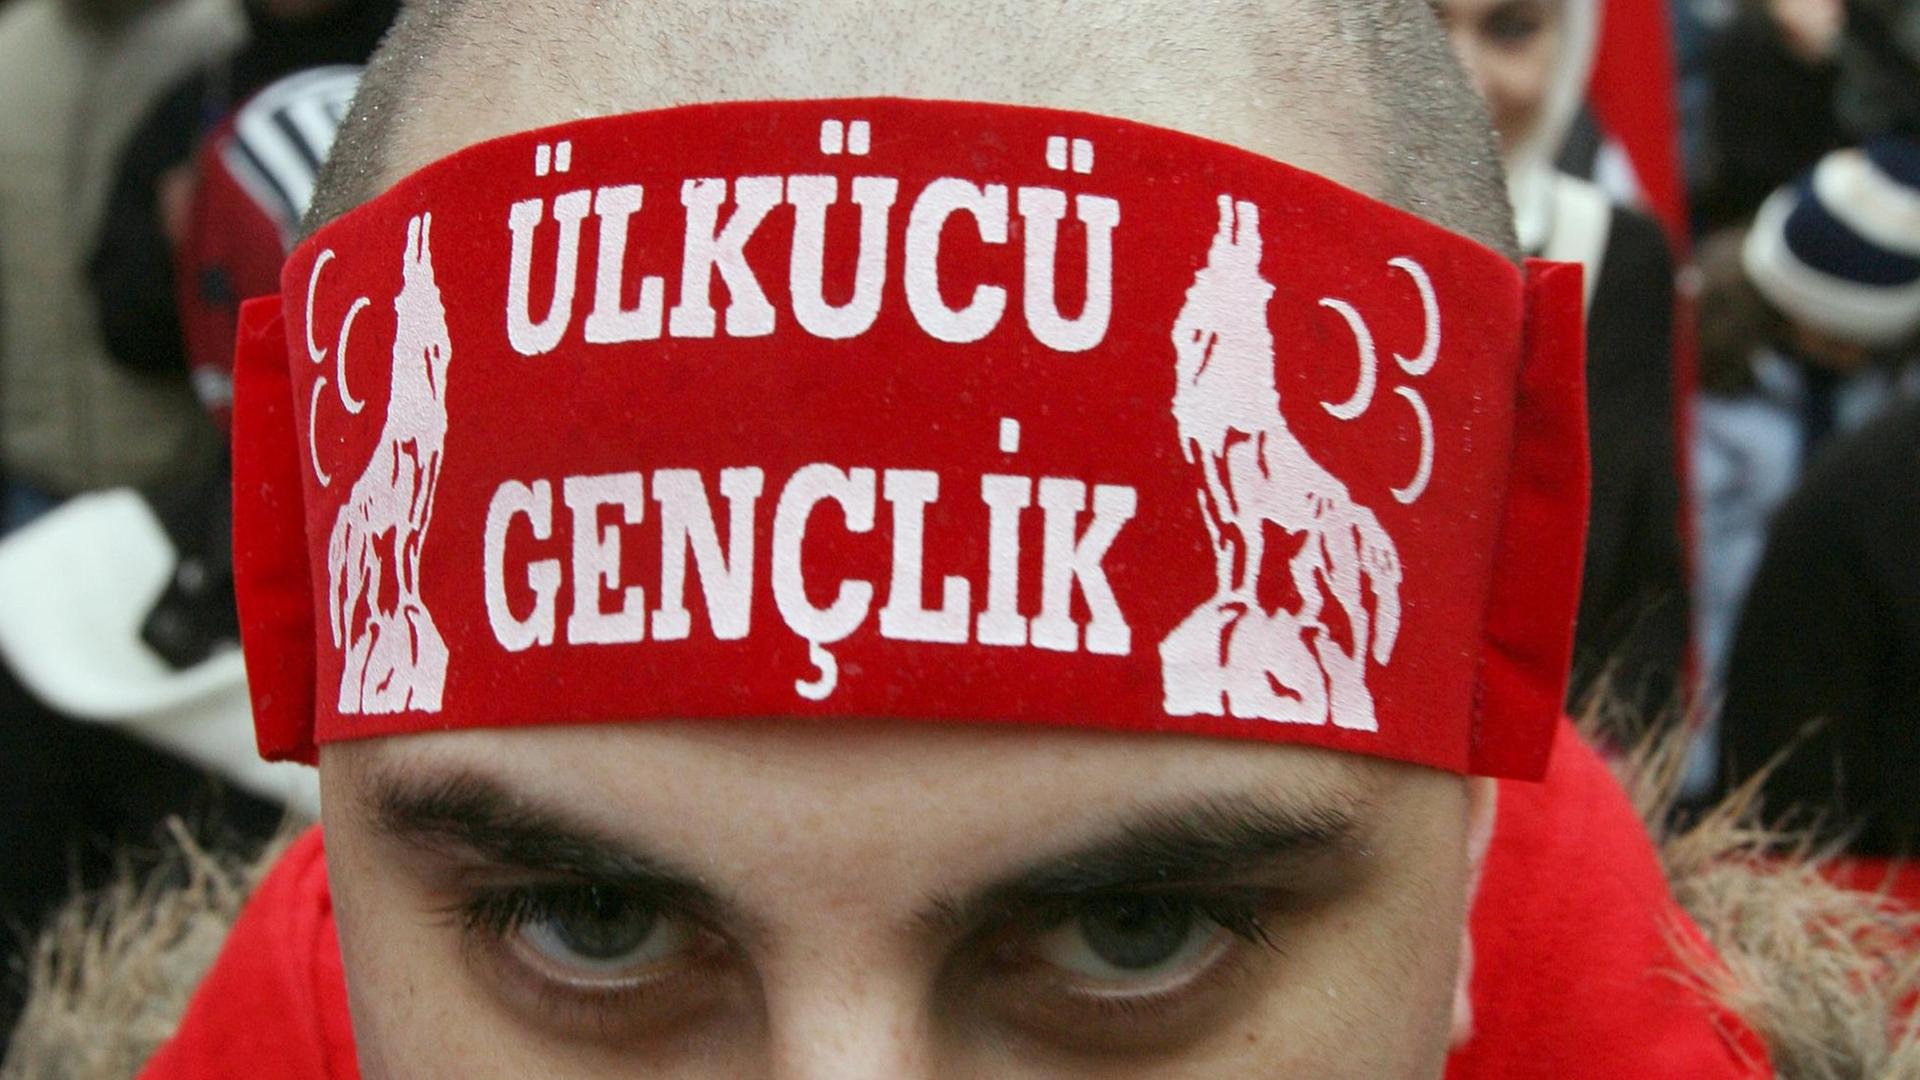 Ein Teilnehmer einer Demonstration trägt am Samstag (10.11.2007) in Frankfurt am Main ein Stirnband der rechtsextremen türkischen Partei "Graue Wölfe"